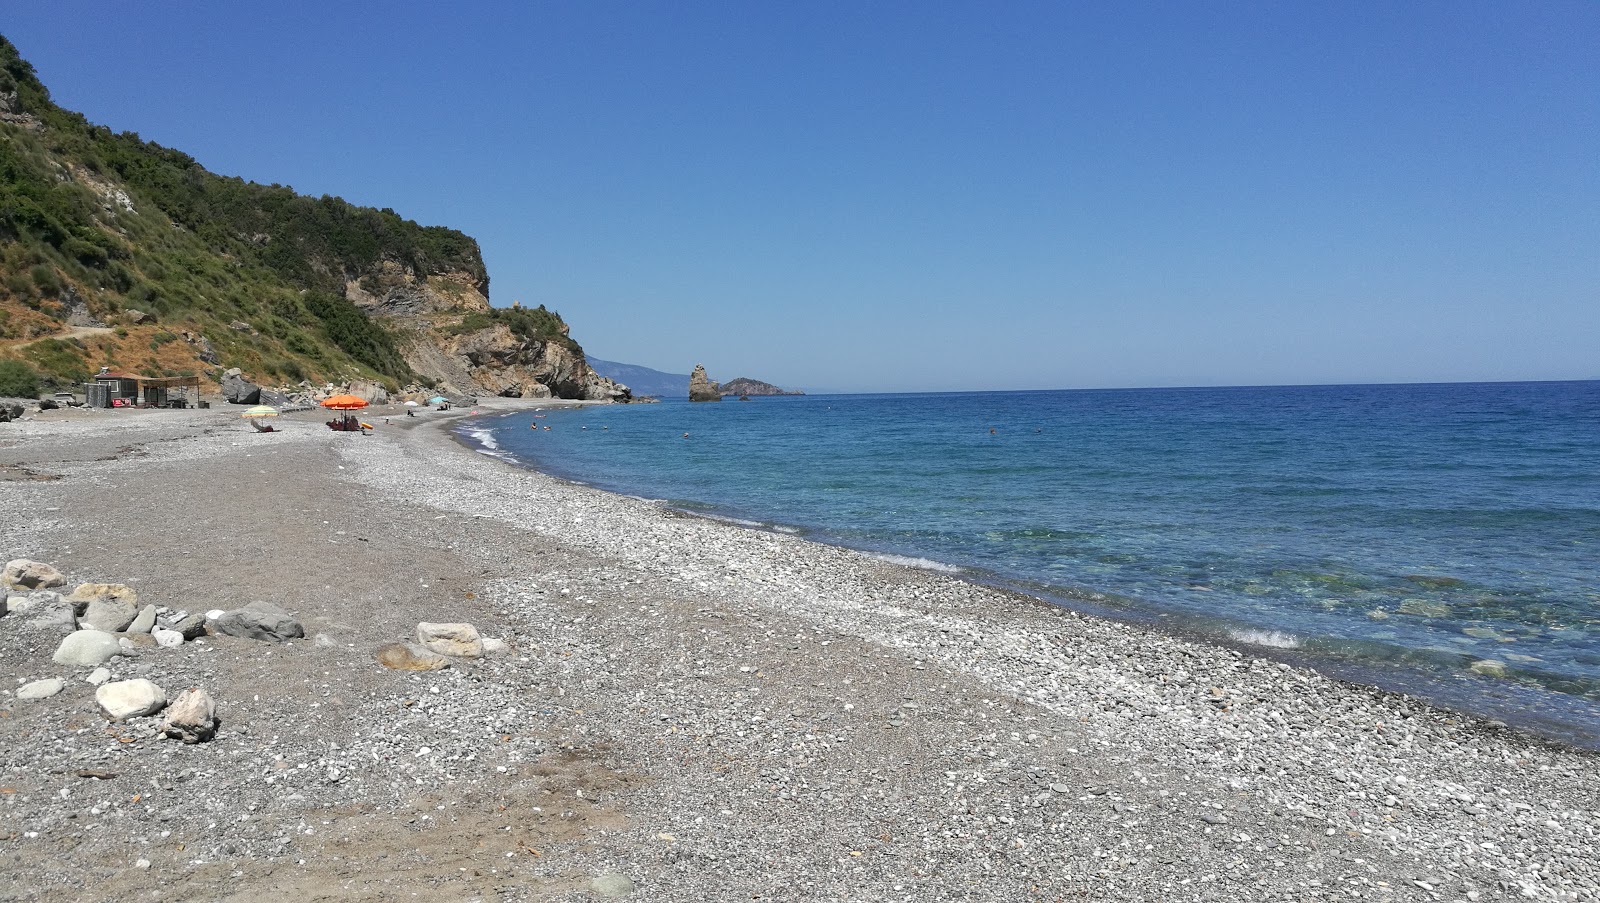 Fotografija Metochiou beach z prostoren zaliv